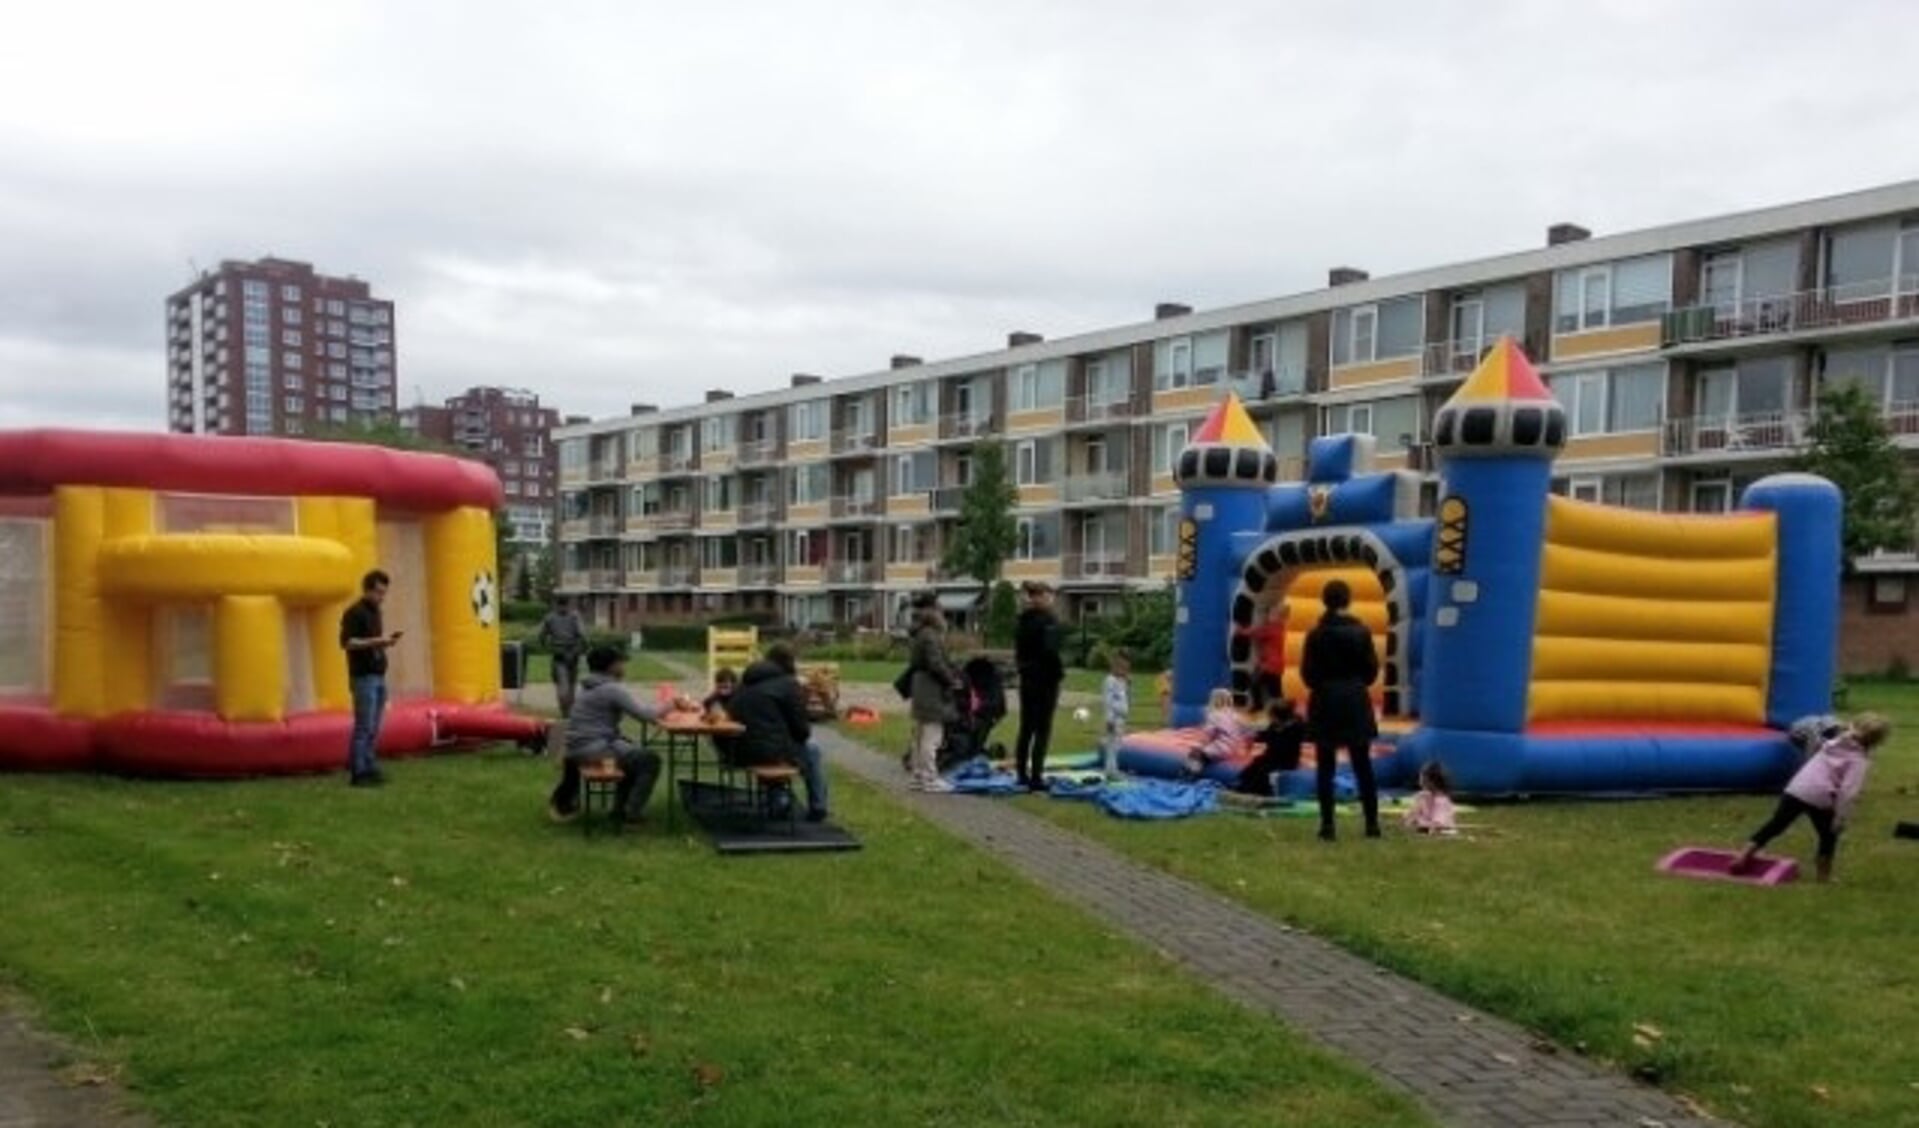 Kinderclub Torenhof start de zomer met Waterpret op grasveld bij de flat Kievitlaan 1-59.